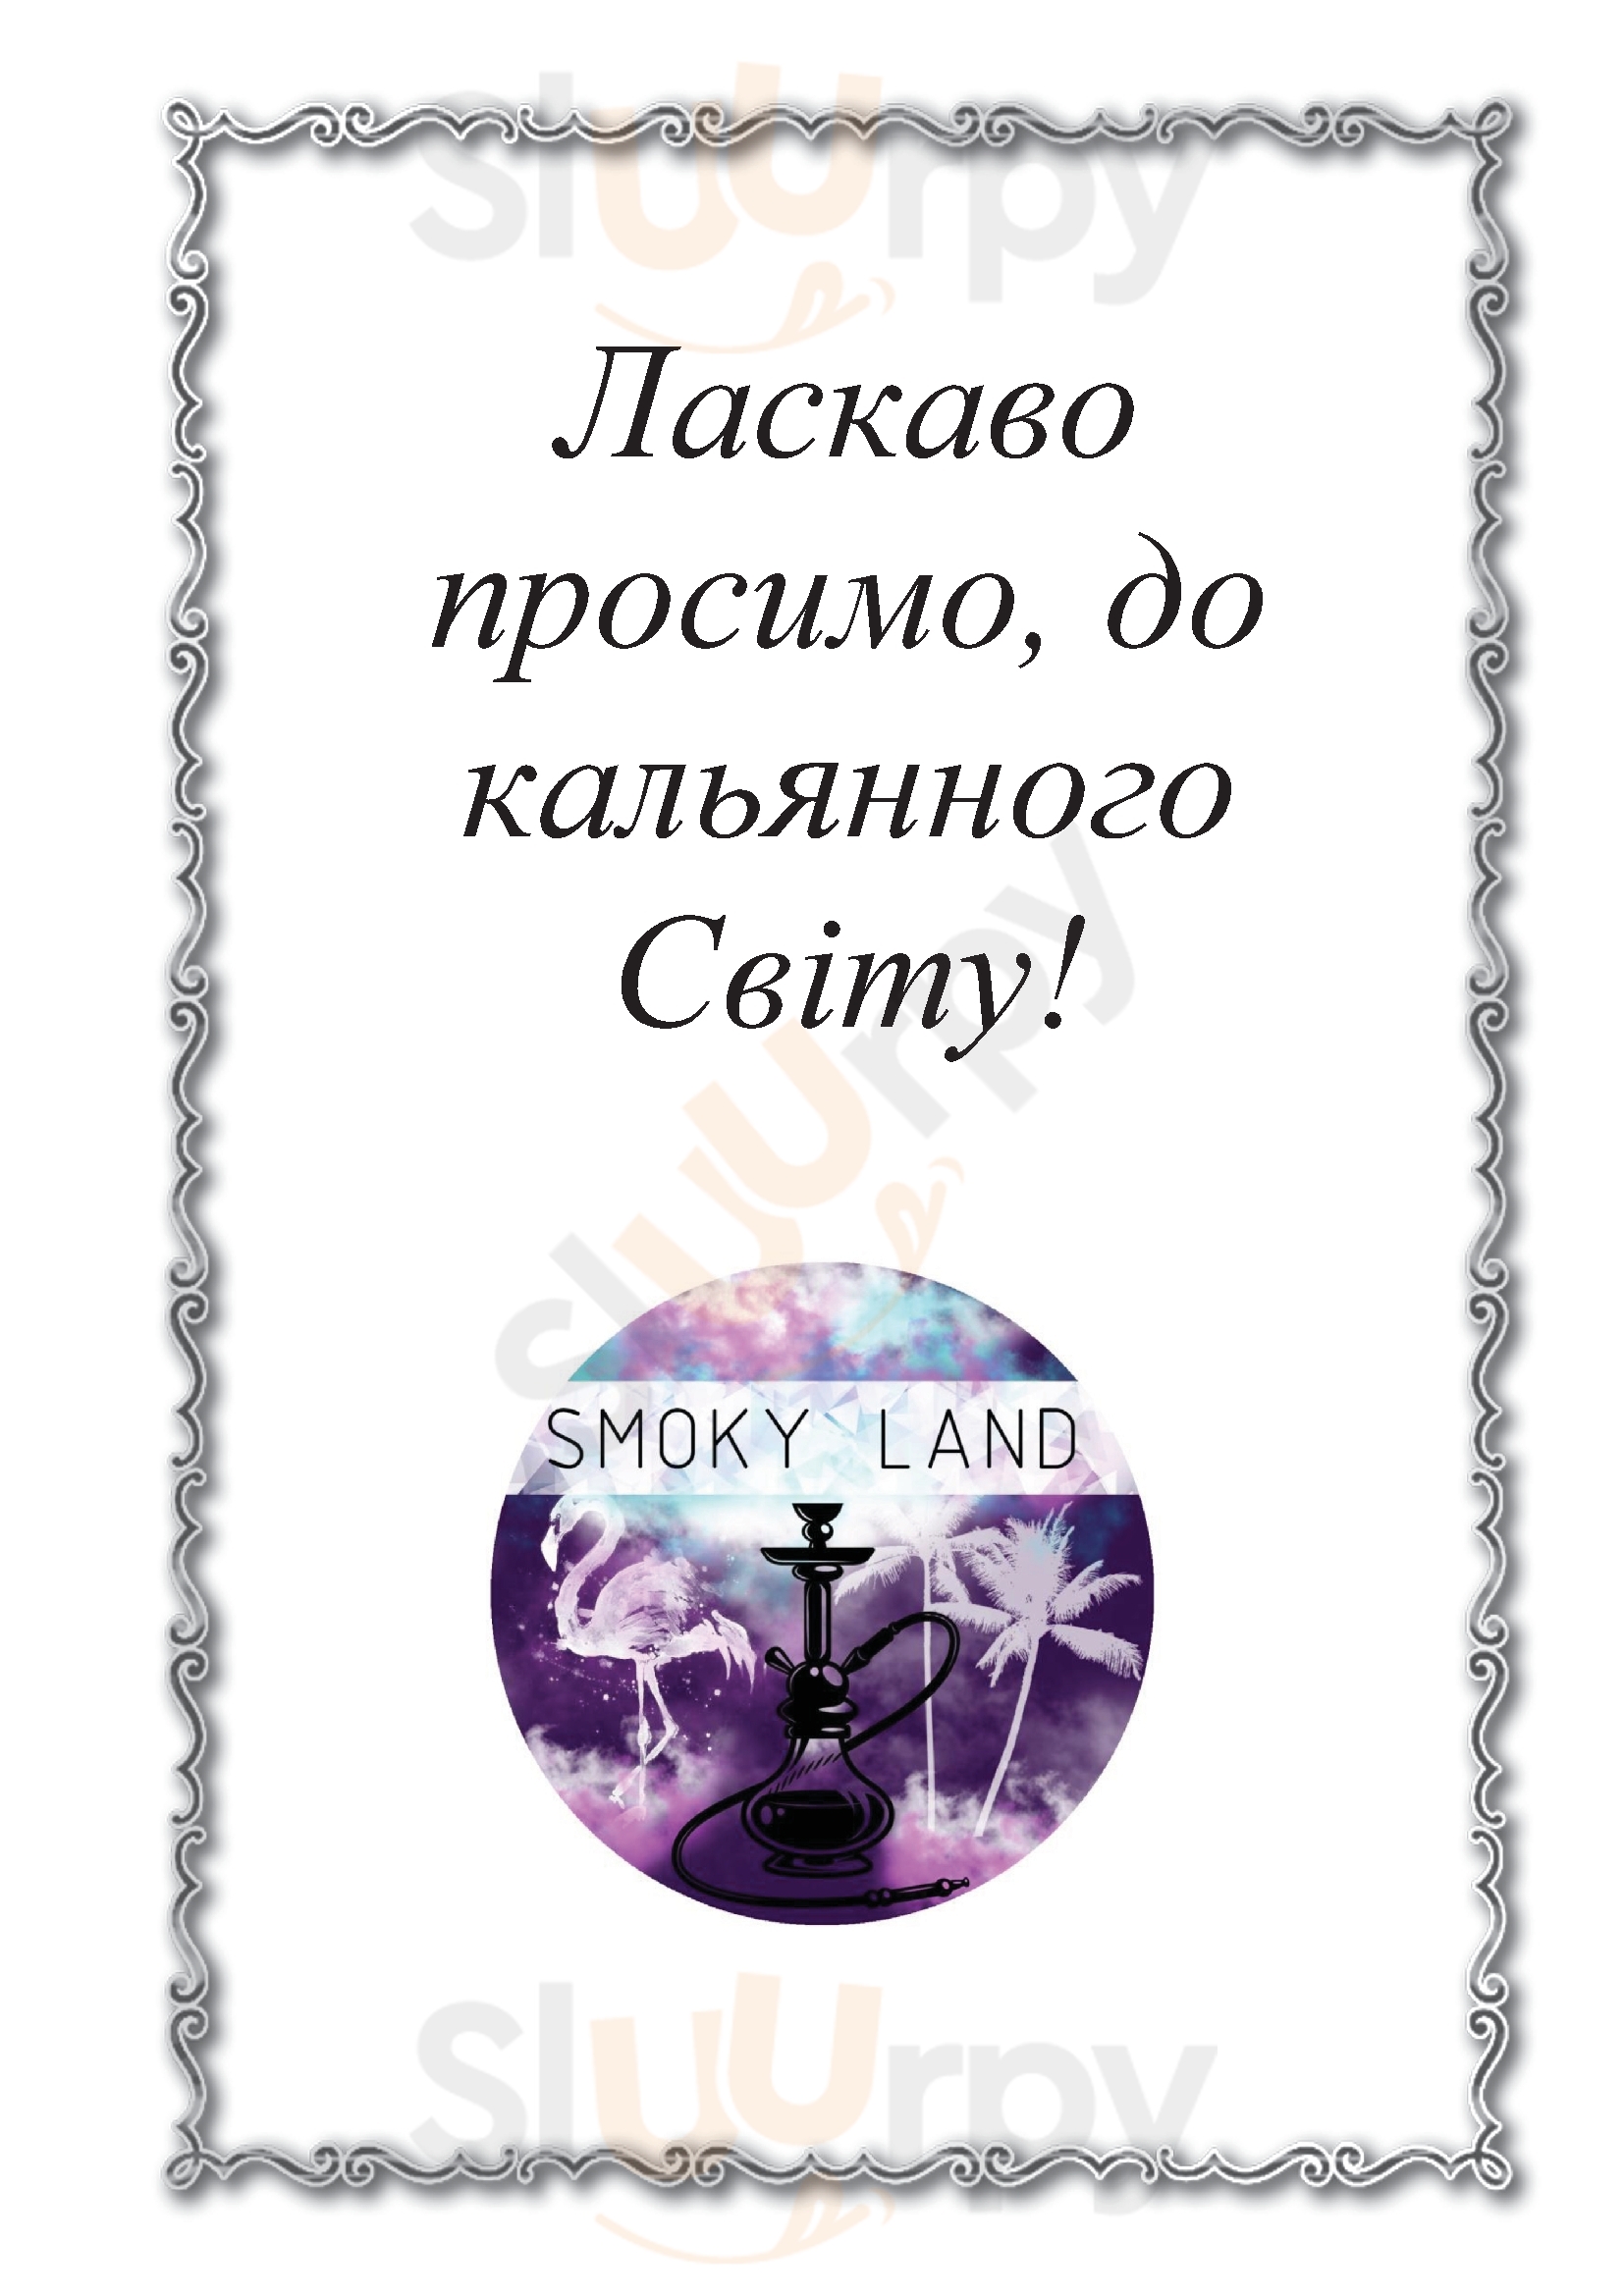 Smoky Land Bar Kiev Menu - 1